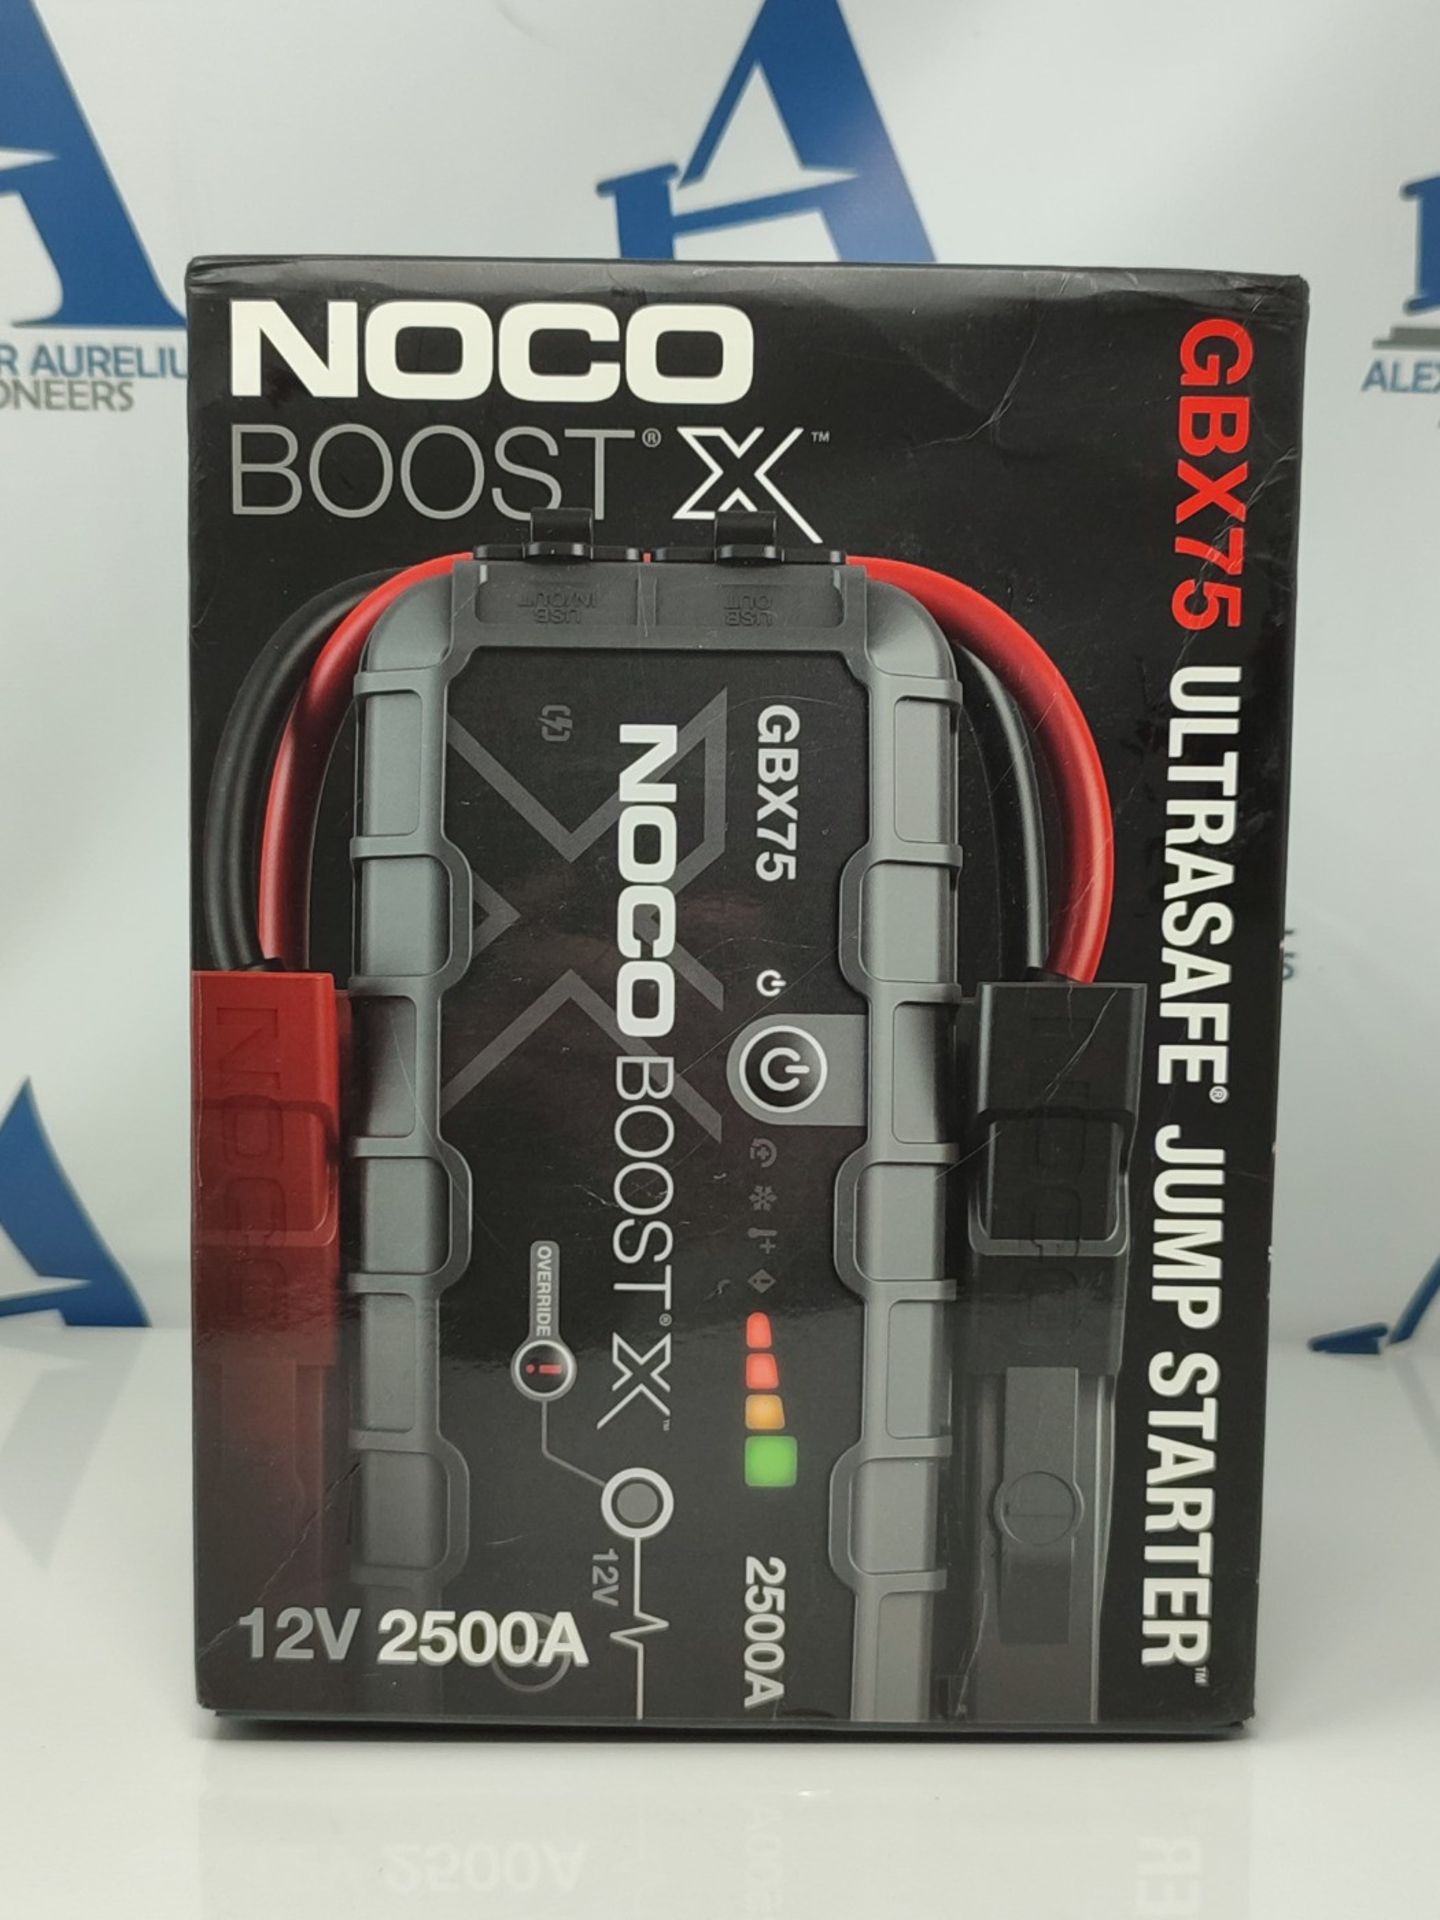 RRP £259.00 NOCO Boost X GBX75 2500A UltraSafe Car Jump Starter, Jump Starter Power Pack, 12V Batt - Image 2 of 15